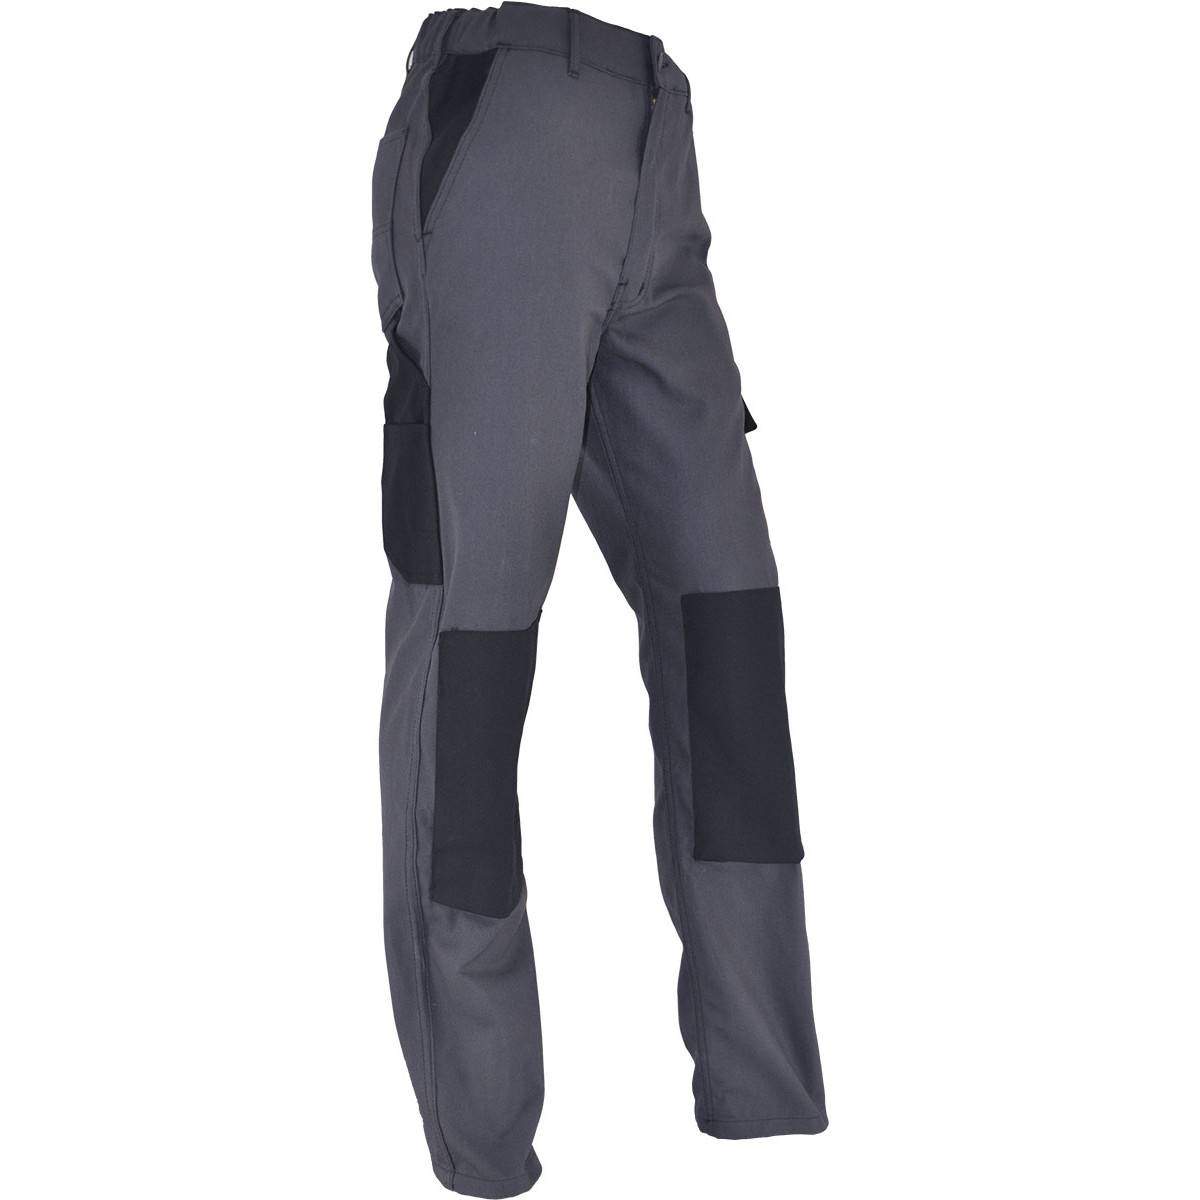 Pantalones de trabajo cómodos PMPC talla 42, gris antracita